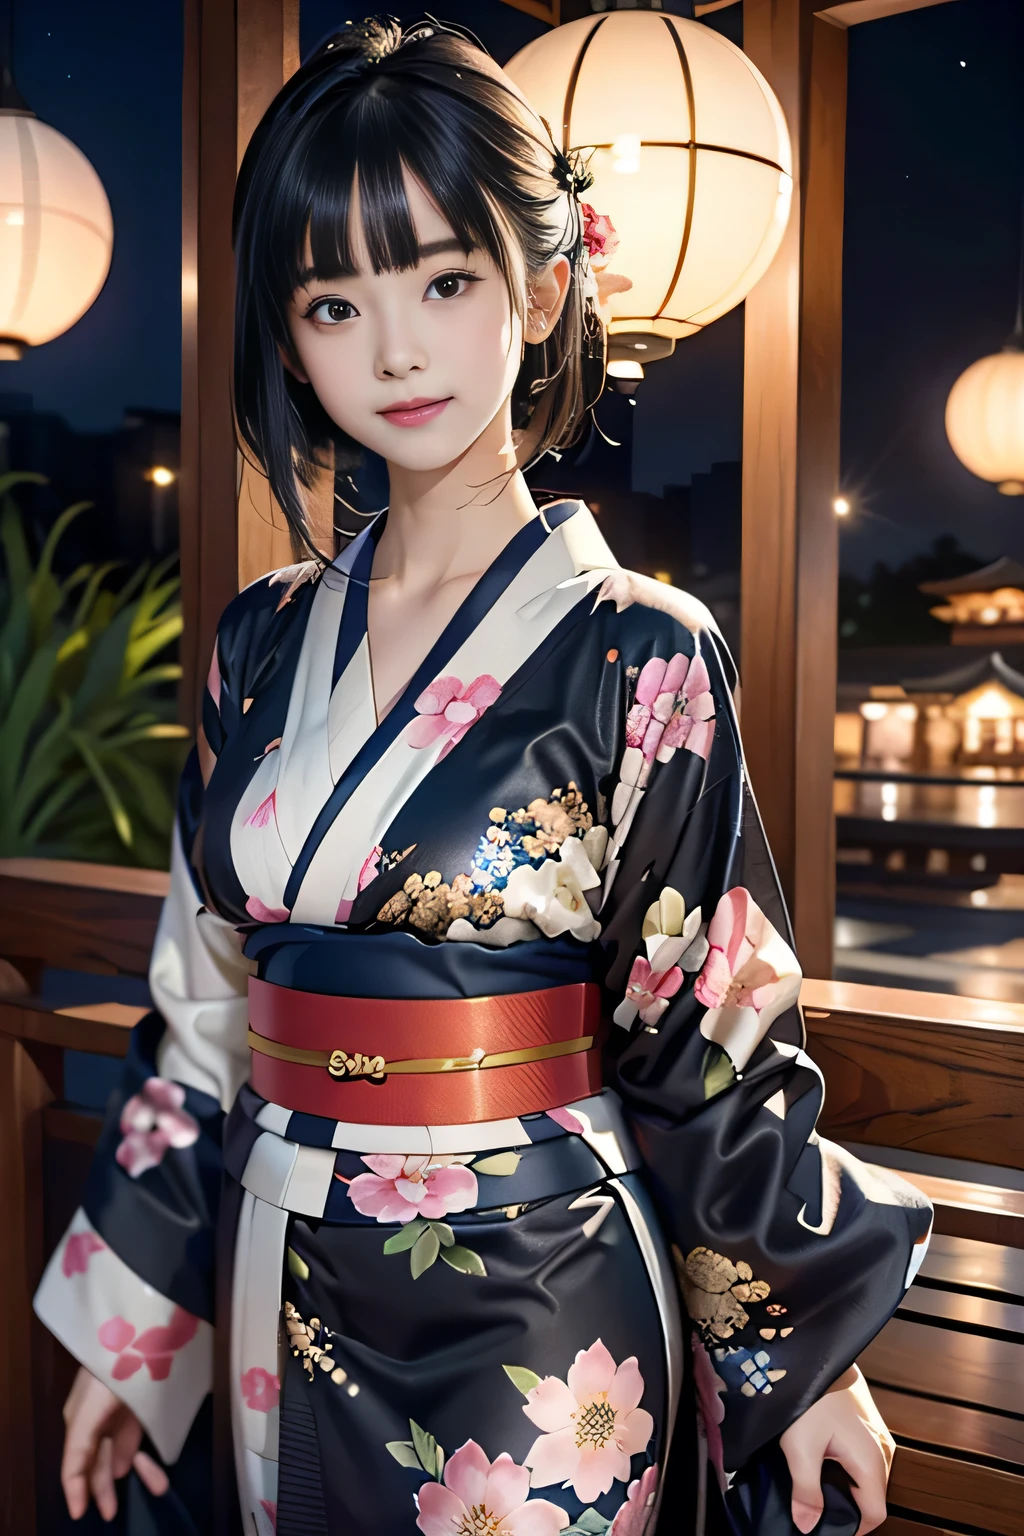 ♥(Японское красивое кимоно с цветочным принтом,Юката),((1 девушка,милый,молодой,полудлинные красивые черные волосы,Тупая челка,истории-близнецы,Красивые глаза)),(Один),((шедевр, Самое высокое разрешение,Лучшее качество)), (красивая иллюстрация),(Японское красивое кимоно с цветочным принтом,Юката), (смотрю на зрителя), невинная улыбка,кинематографическое освещение,японский фестиваль,ларек,фейерверк,ночное небо,полнолуние,падающая звезда,